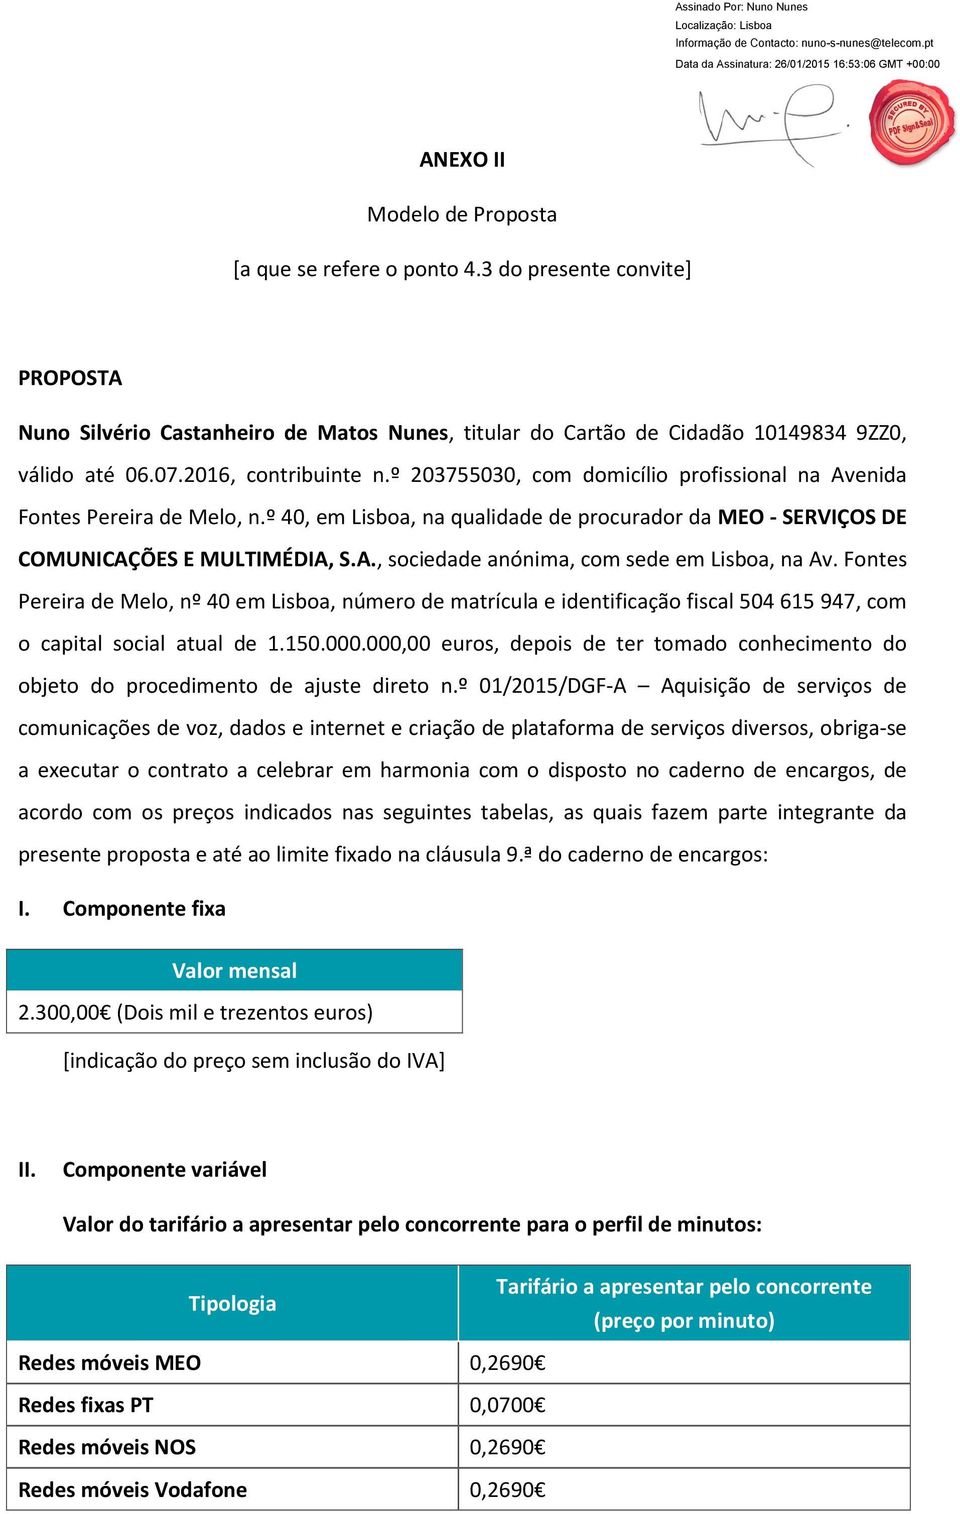 Fontes Pereira de Melo, nº 40 em Lisboa, número de matrícula e identificação fiscal 504615 947, com o capital social atual de 1.150.000.